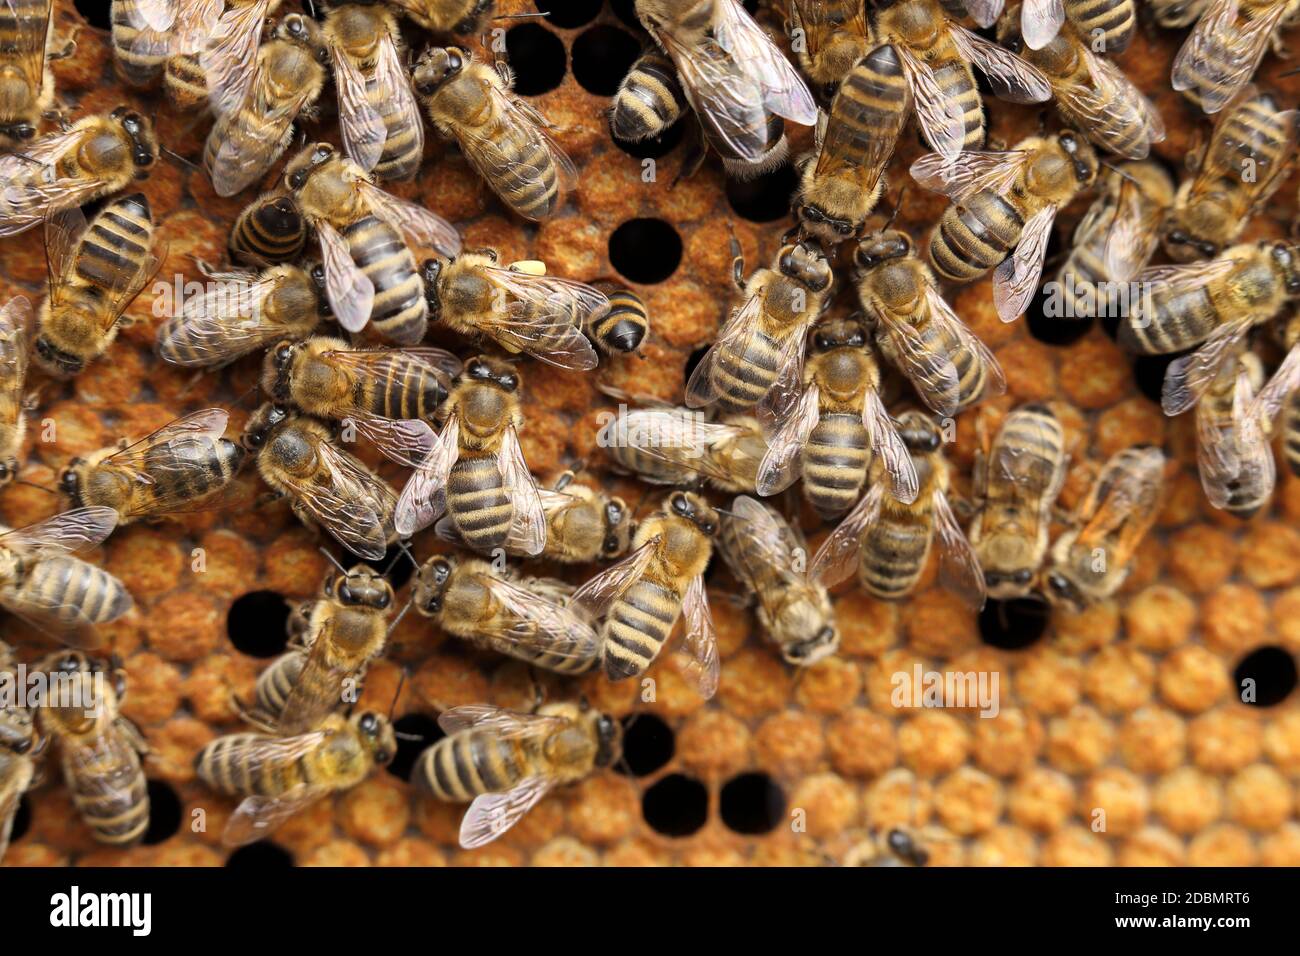 many honey bees on a hive Stock Photo